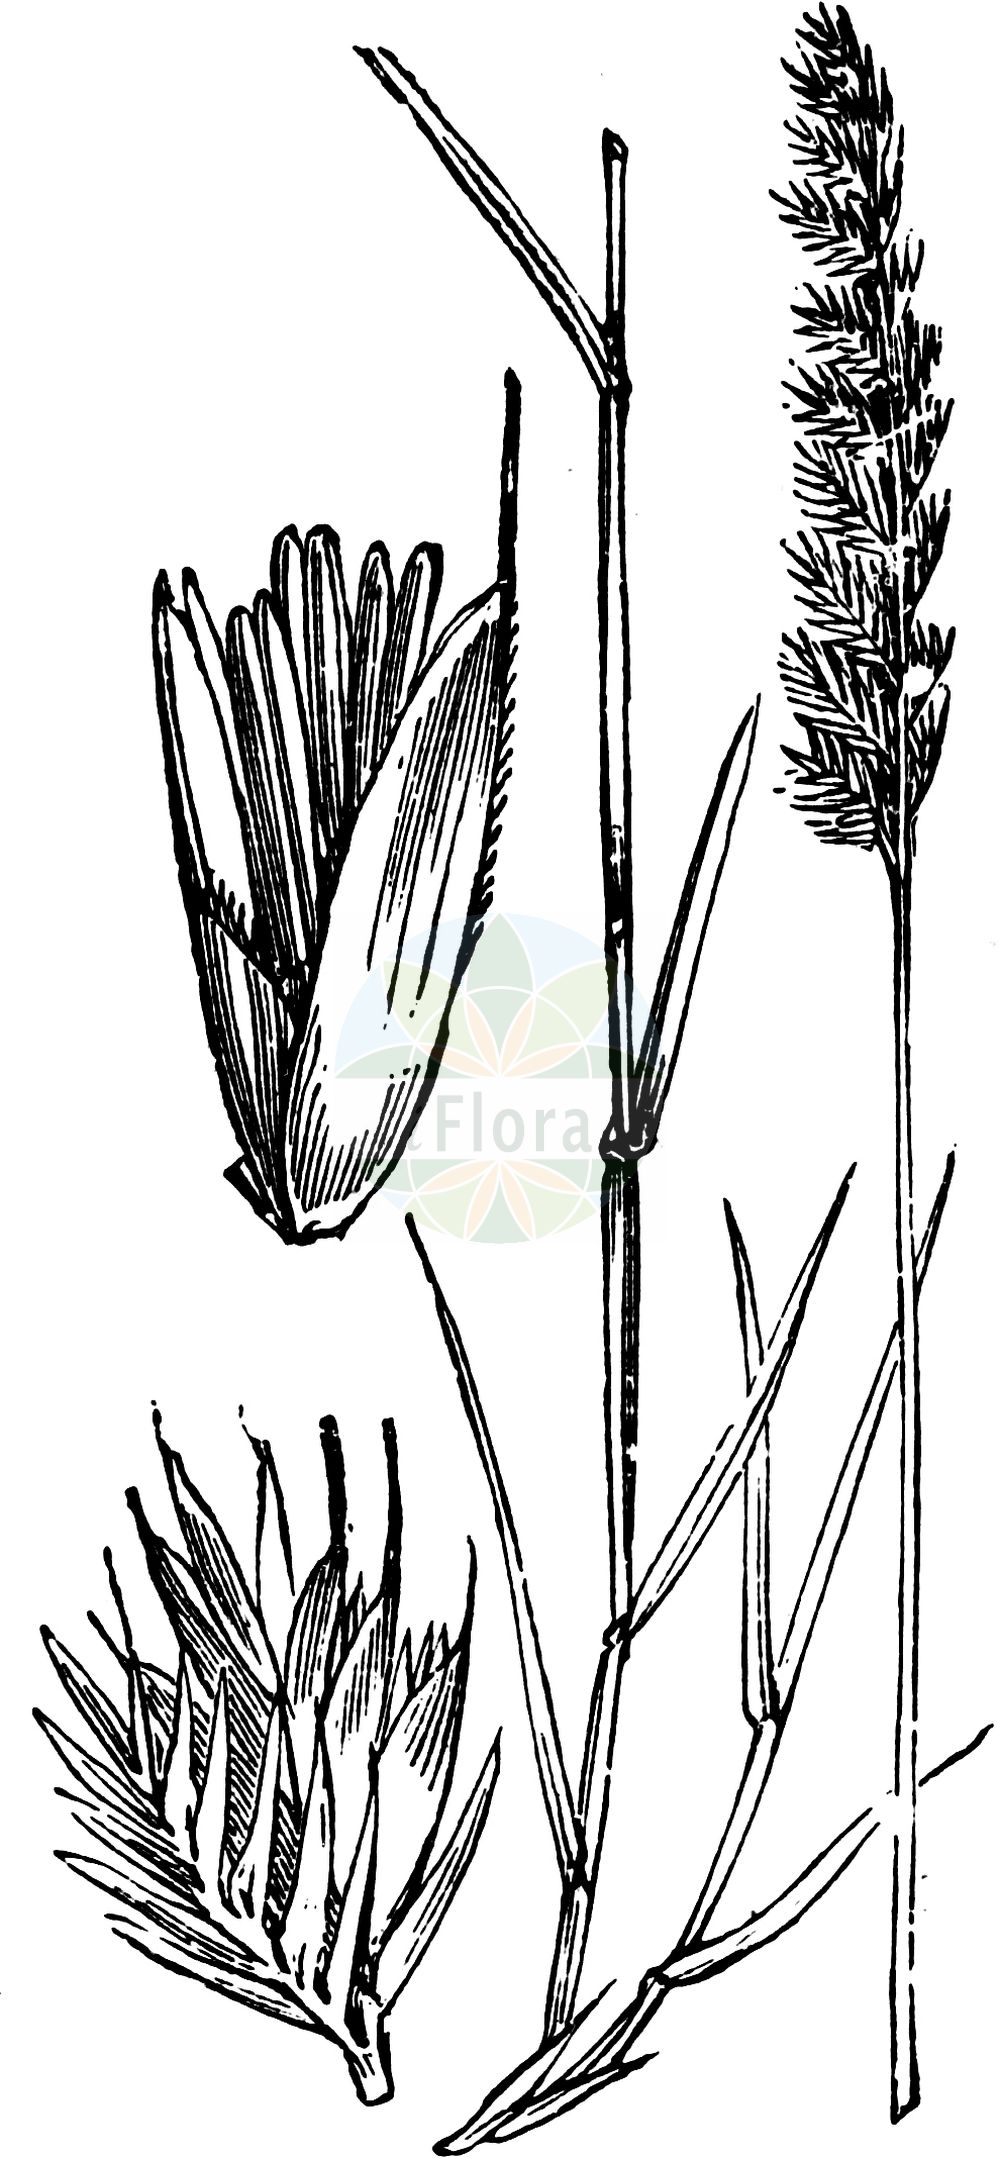 Historische Abbildung von Cynosurus cristatus (Wiesen-Kammgras - Crested Dog's-tail). Das Bild zeigt Blatt, Bluete, Frucht und Same. ---- Historical Drawing of Cynosurus cristatus (Wiesen-Kammgras - Crested Dog's-tail). The image is showing leaf, flower, fruit and seed.(Cynosurus cristatus,Wiesen-Kammgras,Crested Dog's-tail,Cynosurus cristatus,Wiesen-Kammgras,Weide-Kammgras,Crested Dog's-tail,Crested Dogstail Grass,Crested Dog-tail Grass,Cynosurus,Kammgras,Dogstail Grass,Poaceae,Süßgräser,Grass family,Blatt,Bluete,Frucht,Same,leaf,flower,fruit,seed,Fitch et al. (1880))